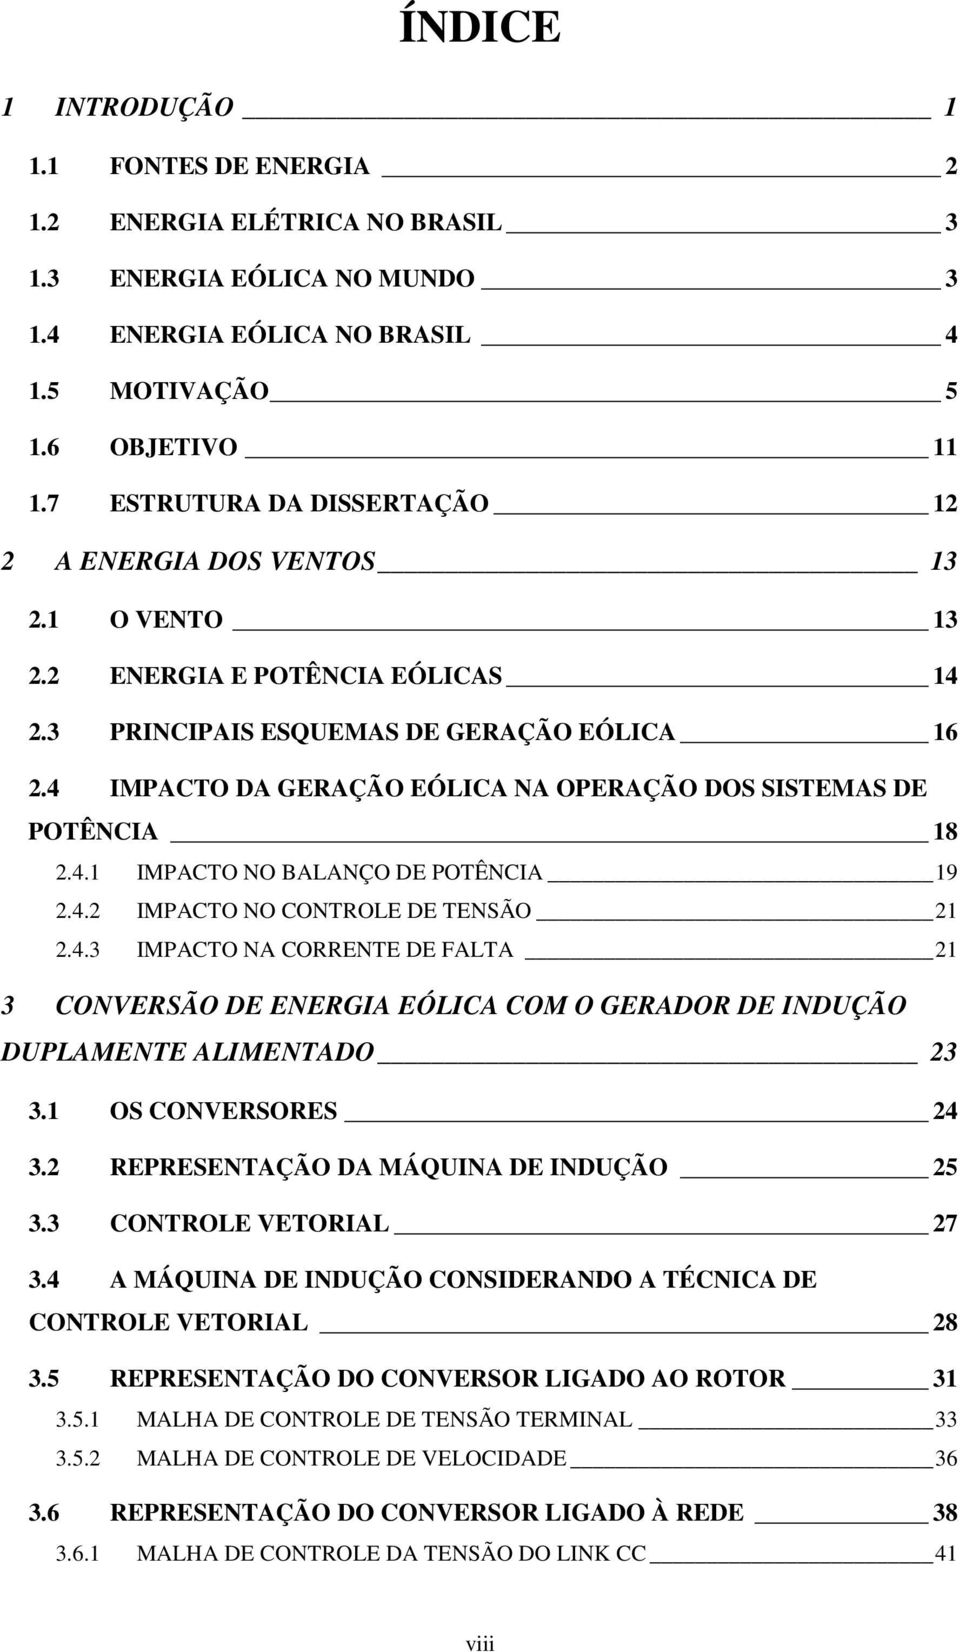 4 IMPACTO DA GERAÇÃO EÓLICA NA OPERAÇÃO DOS SISTEMAS DE POTÊNCIA 18 2.4.1 IMPACTO NO BALANÇO DE POTÊNCIA 19 2.4.2 IMPACTO NO CONTROLE DE TENSÃO 21 2.4.3 IMPACTO NA CORRENTE DE FALTA 21 3 CONVERSÃO DE ENERGIA EÓLICA COM O GERADOR DE INDUÇÃO DUPLAMENTE ALIMENTADO 23 3.